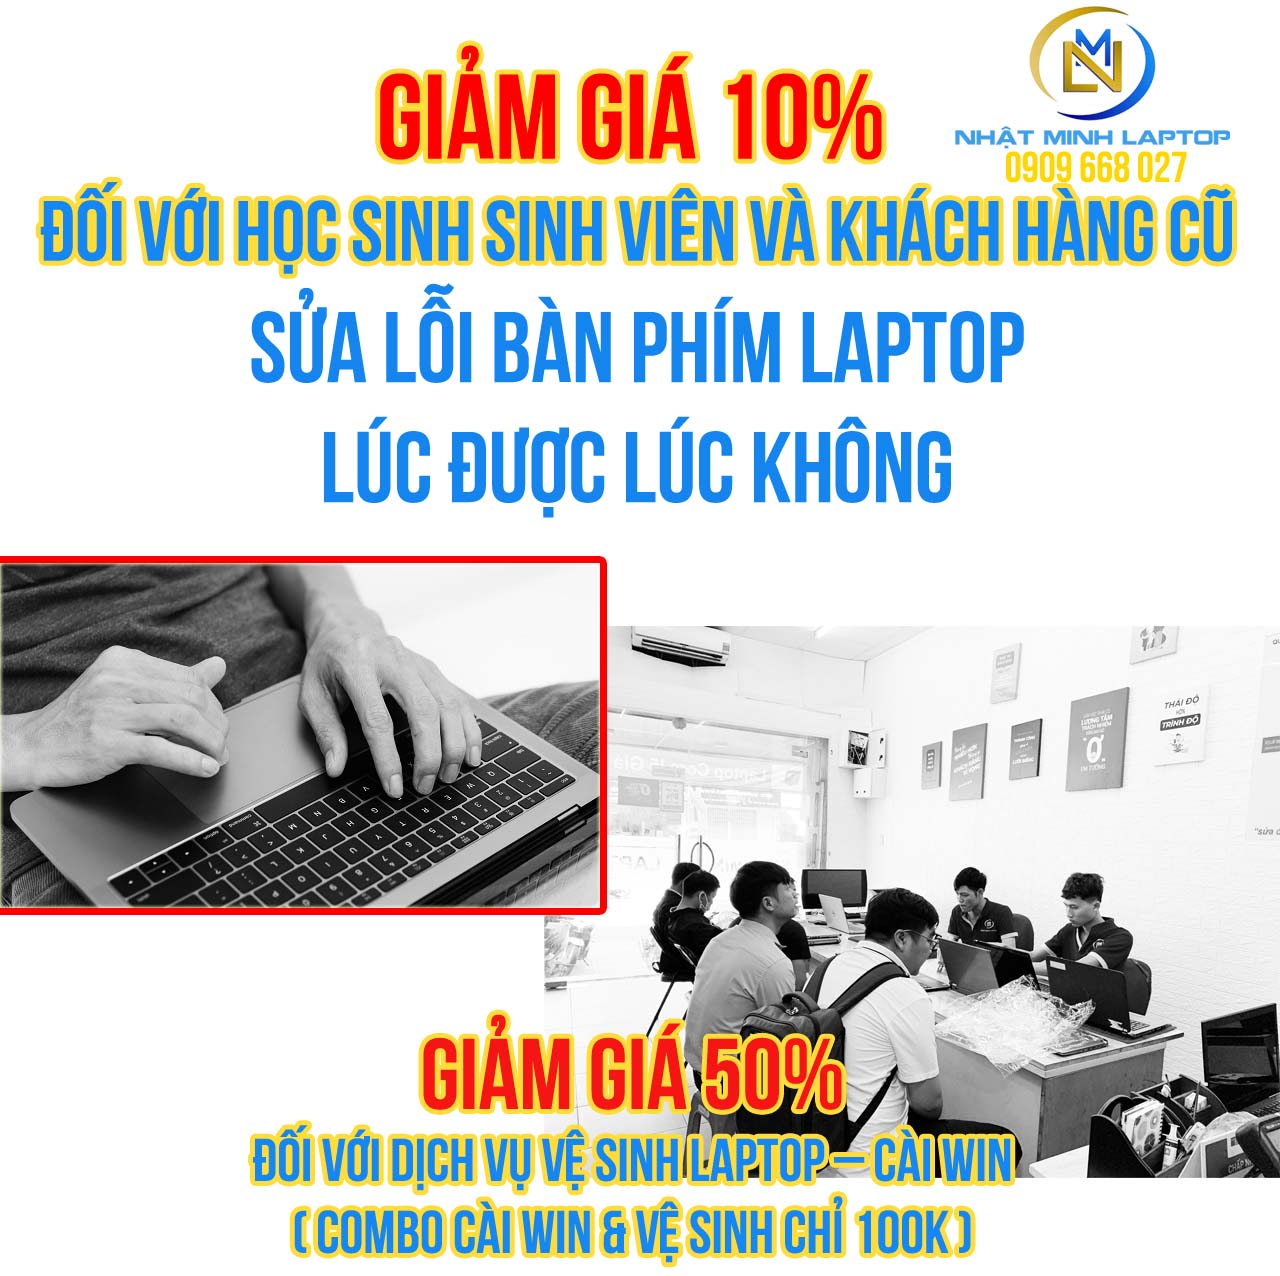 Thay bàn phím laptop ở đâu uy tín nhất Quận Tân Phú